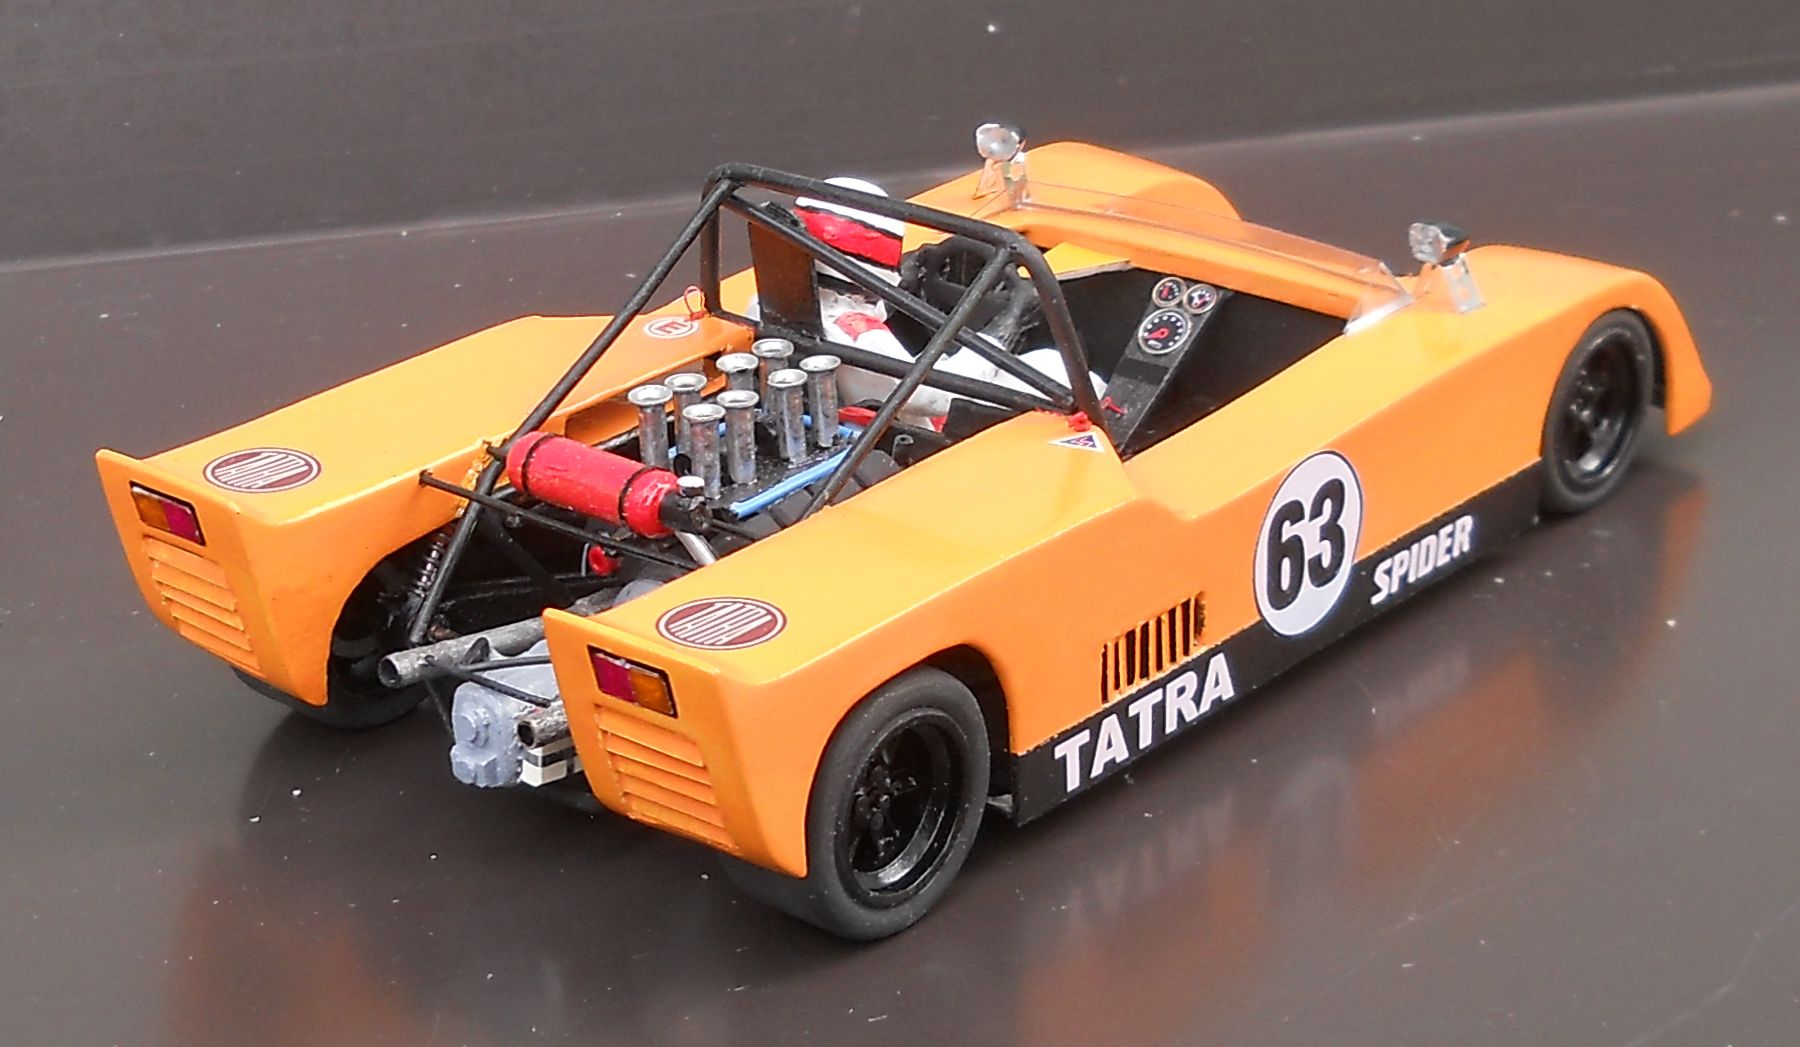 spider Tatra 2